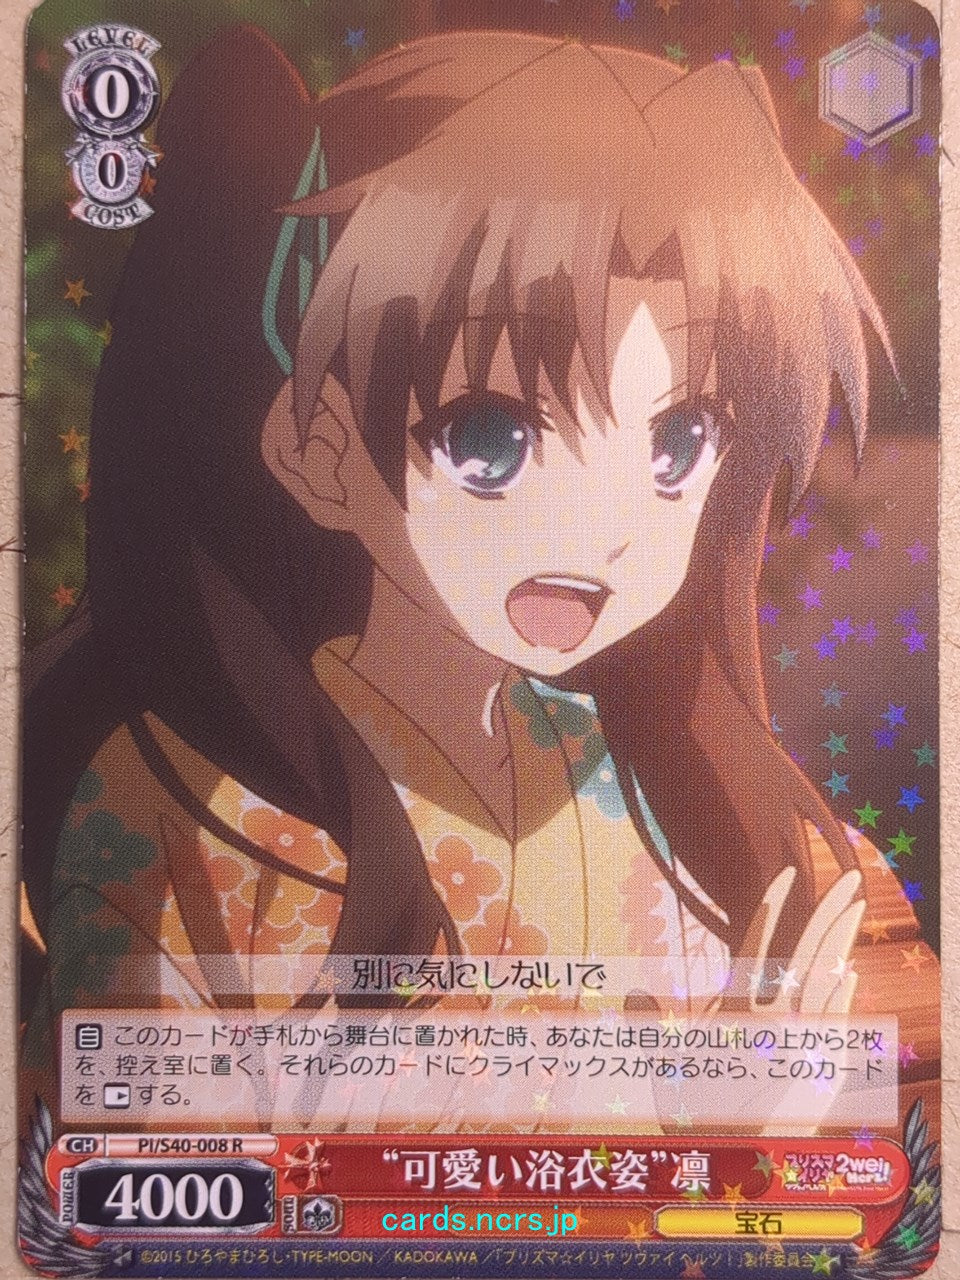 Weiss Schwarz Fate/kaleid linier Prisma Illya -Rin-   Trading Card PI/S40-008R